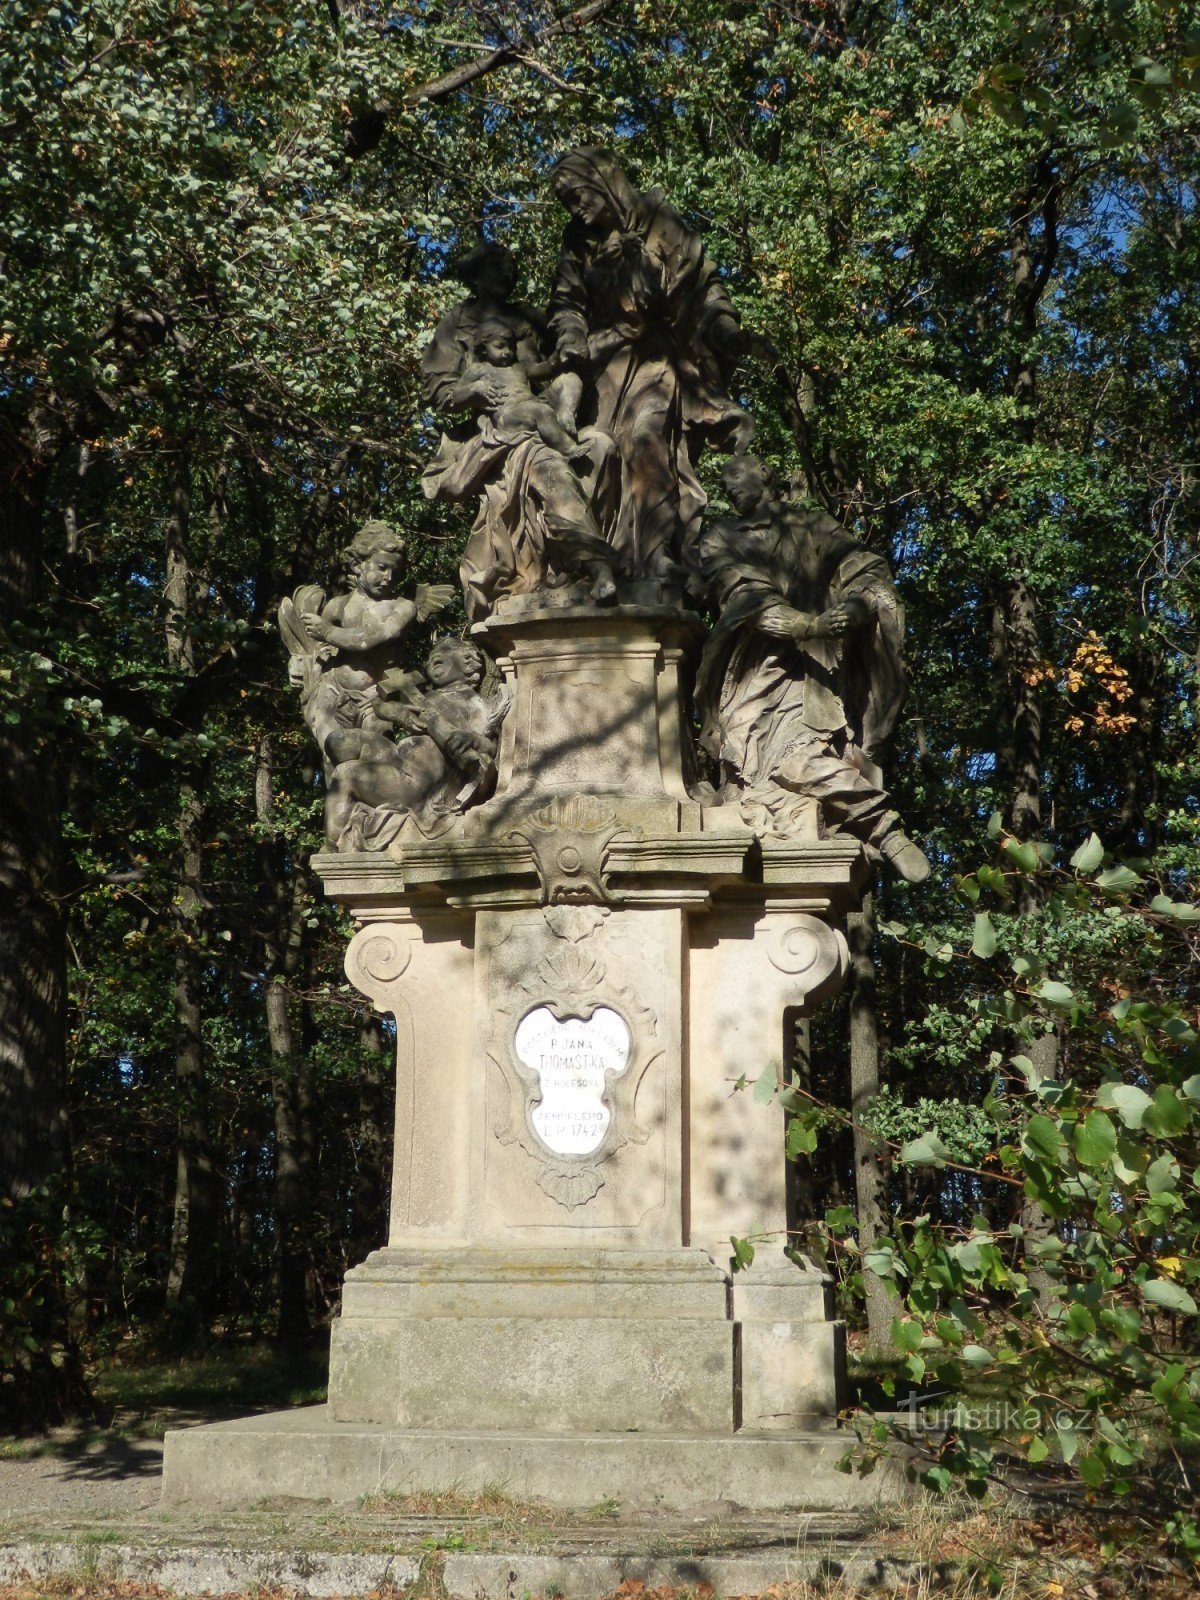 Άγαλμα του Αγ. Η Άννα στον Γιάνκοβιτς